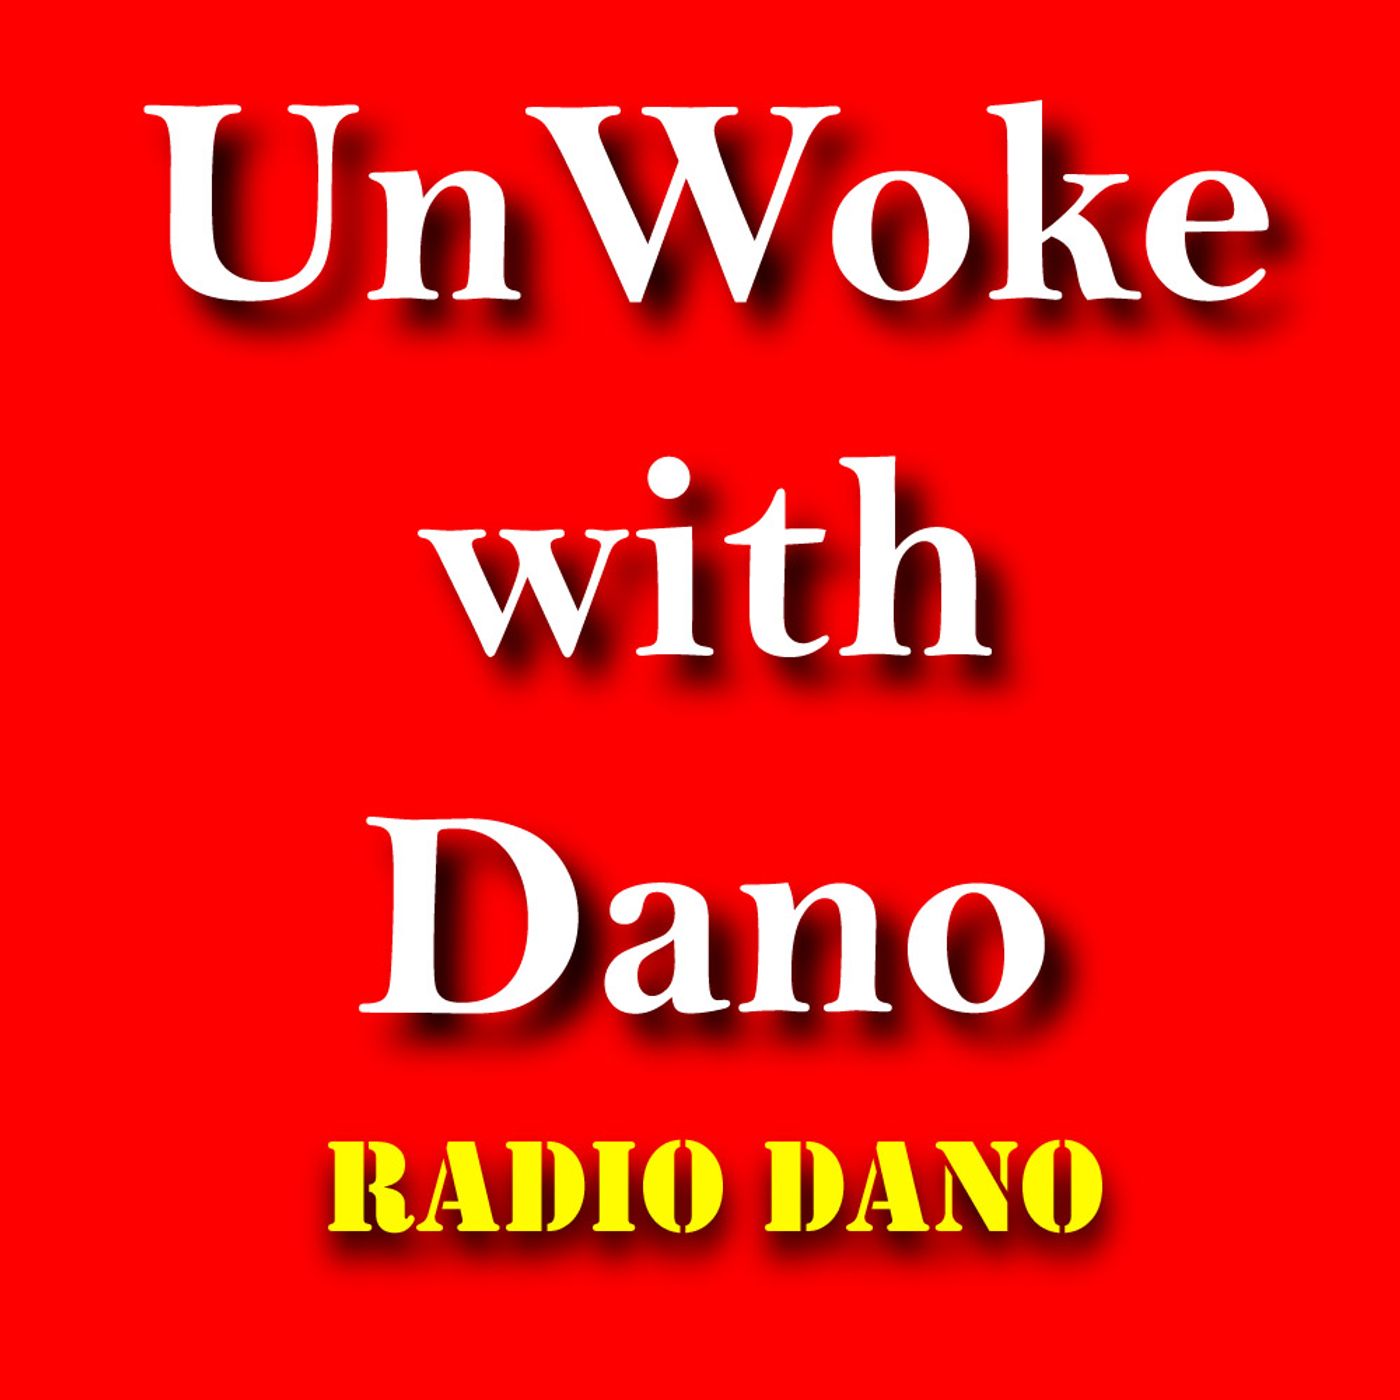 Unwoke With Dano